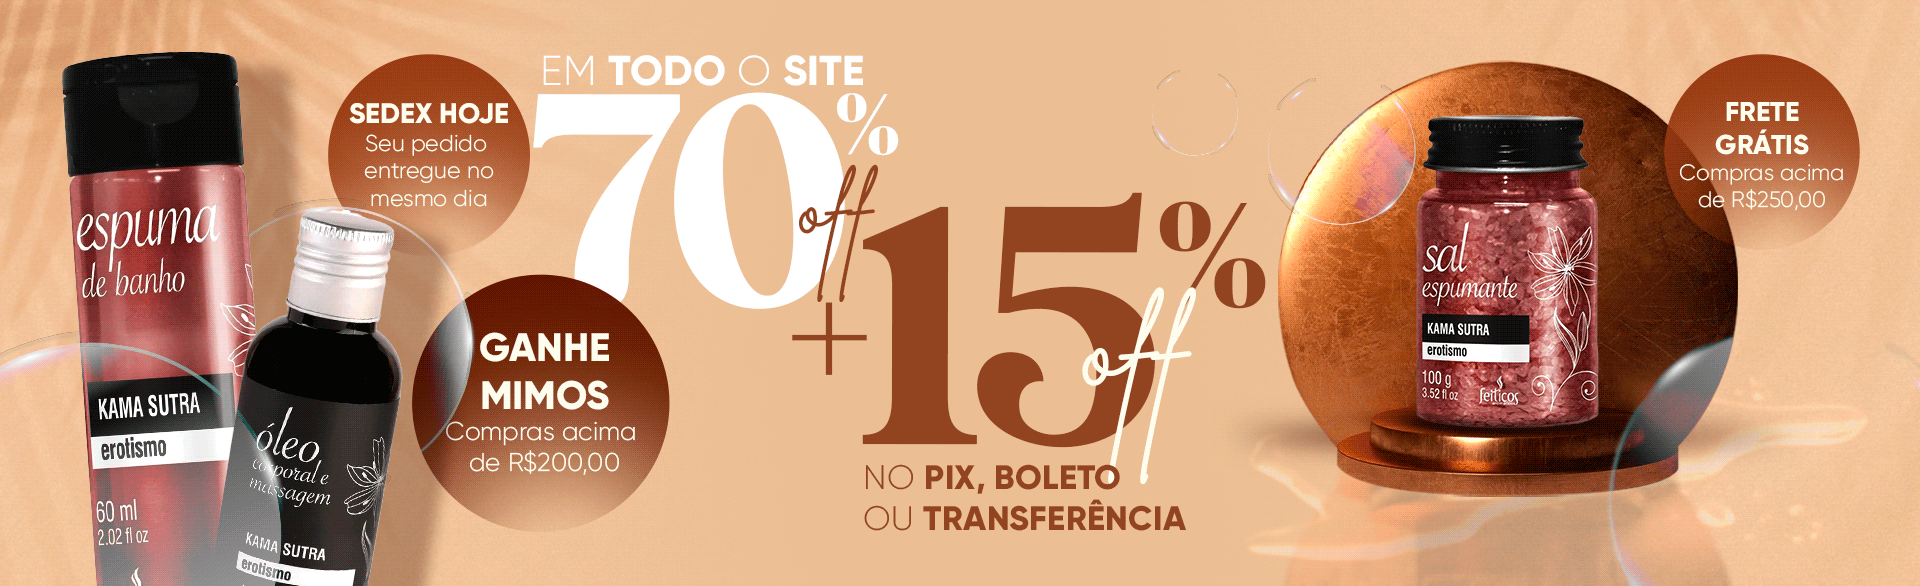 70 % OFF EM TODO O SITE + 15 % NO PIX, BOLETO OU TRANSFERÊNCIA